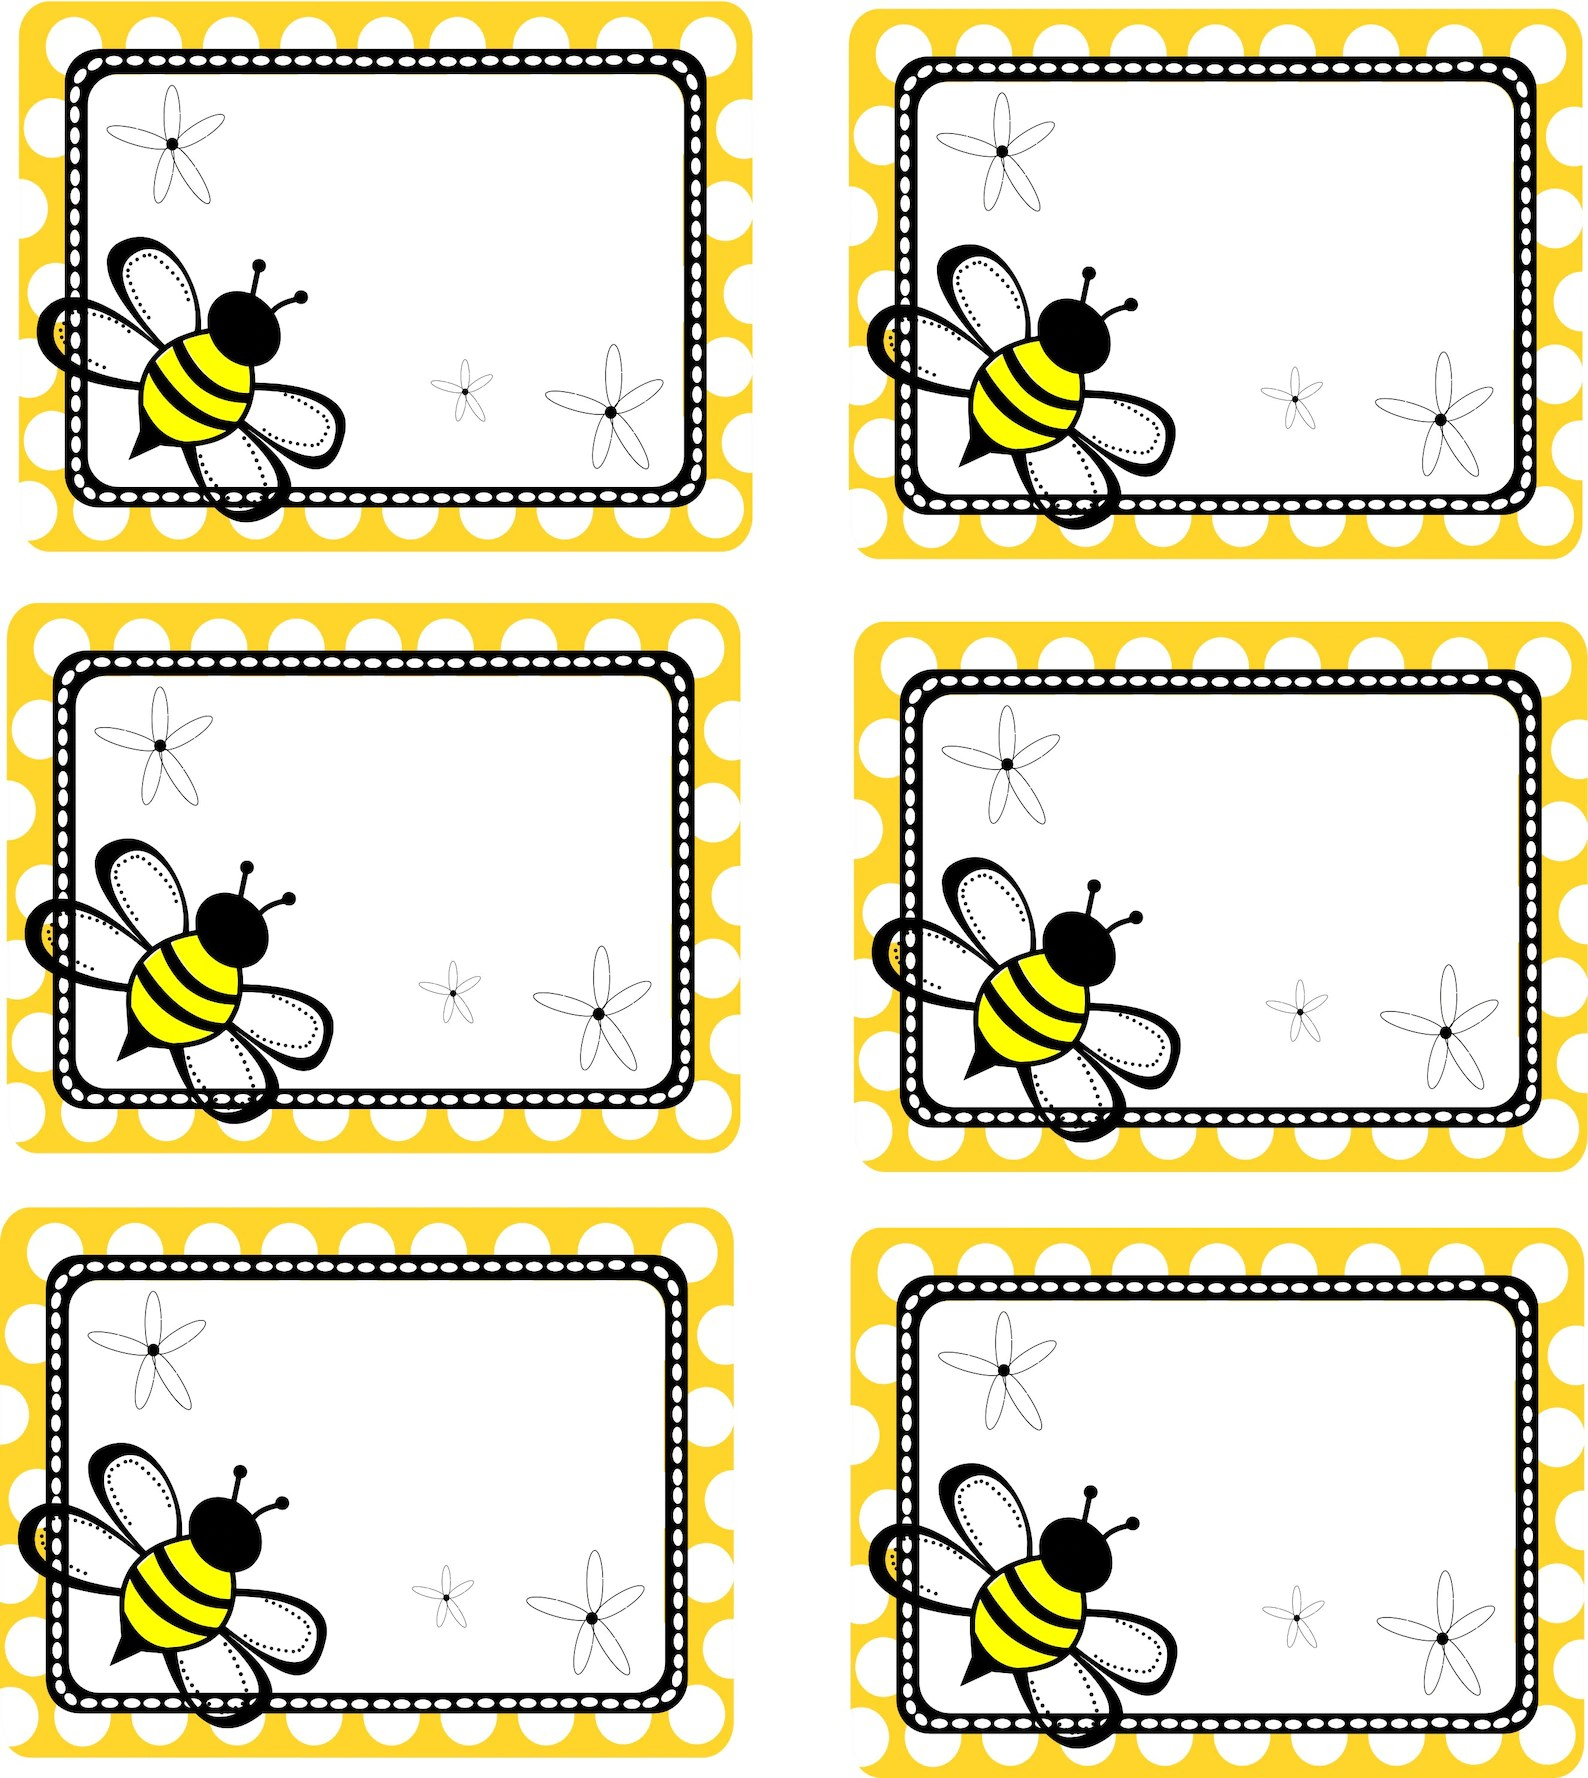 Free Printable Bee Name Tags This Printable Allows Beekeepers To - Free Printable Bee Name Tags